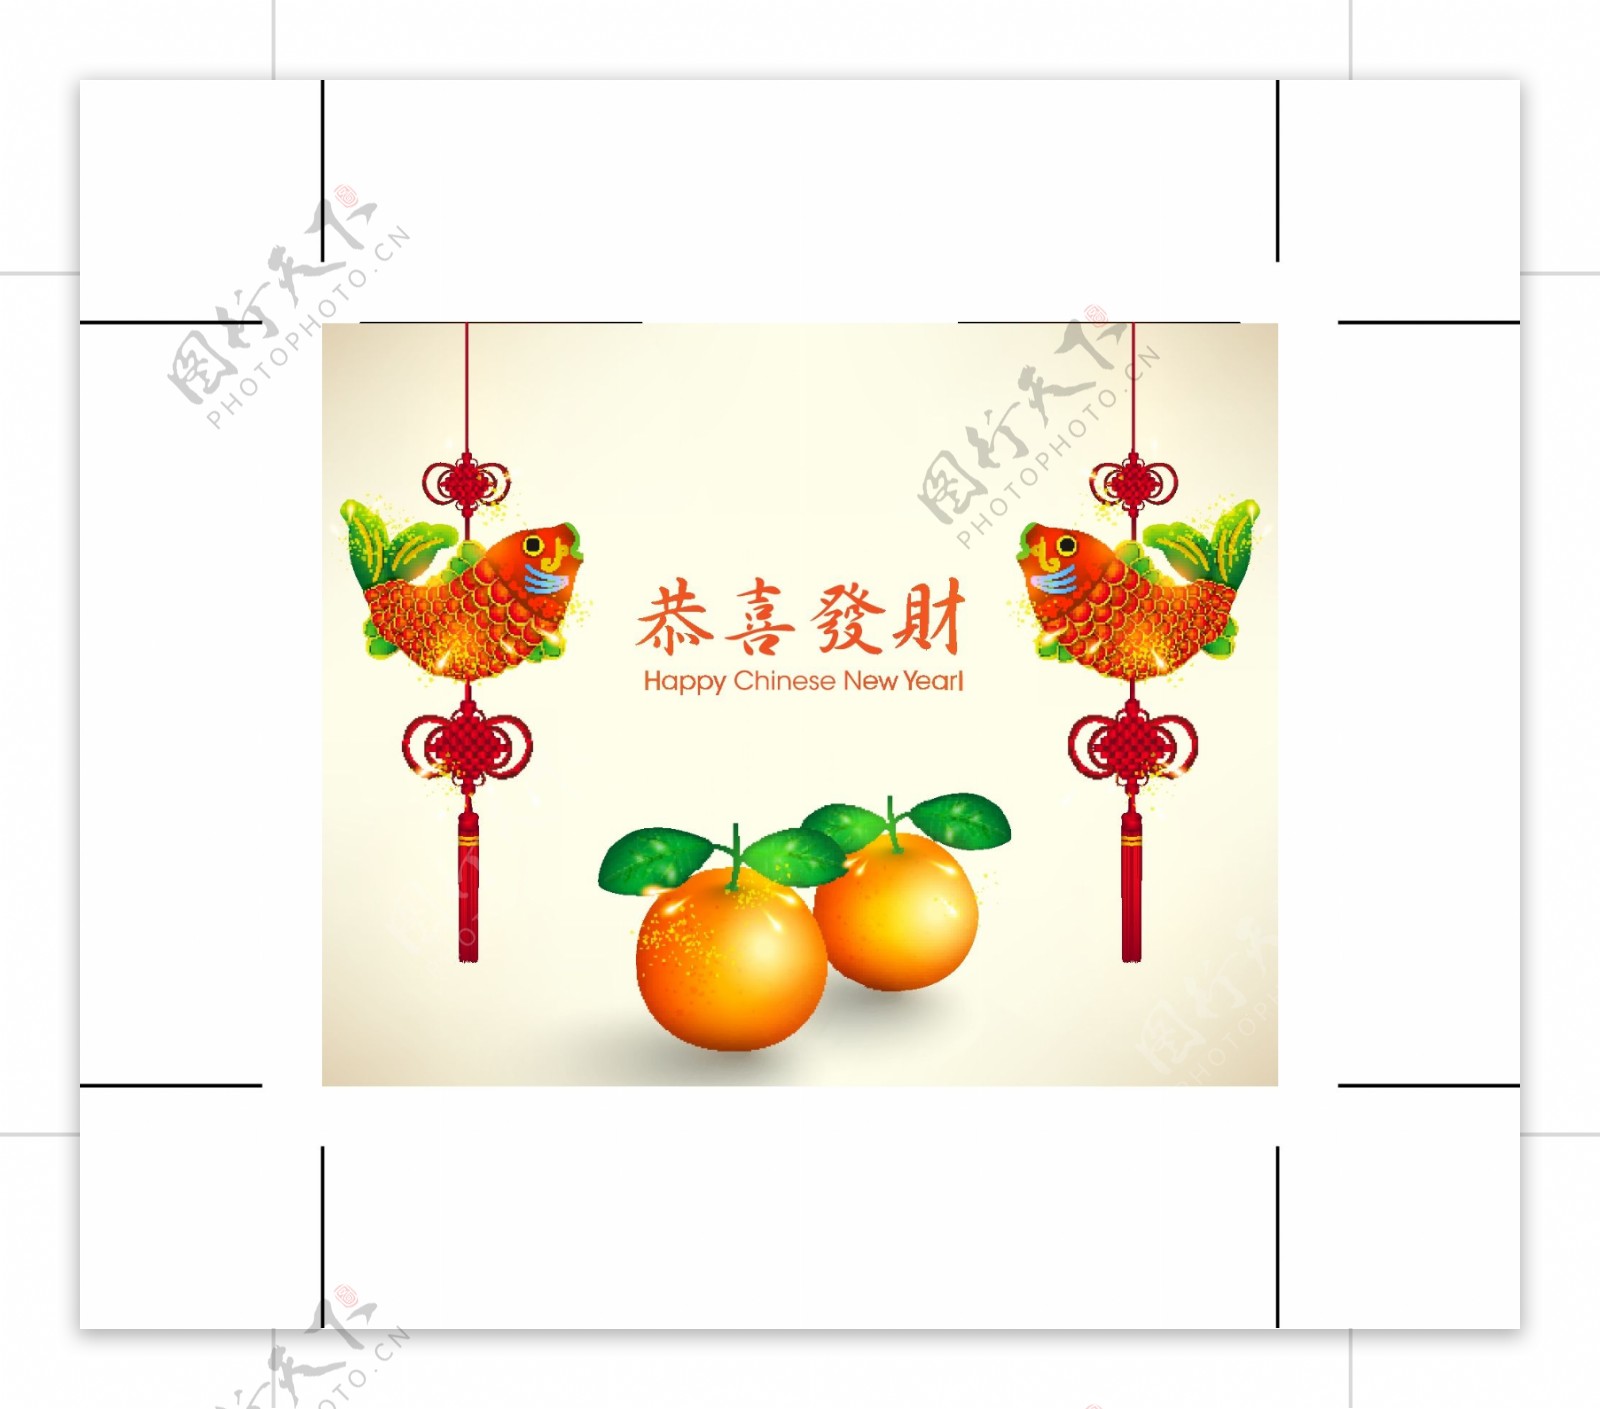 中国的新年贺卡03矢量素材